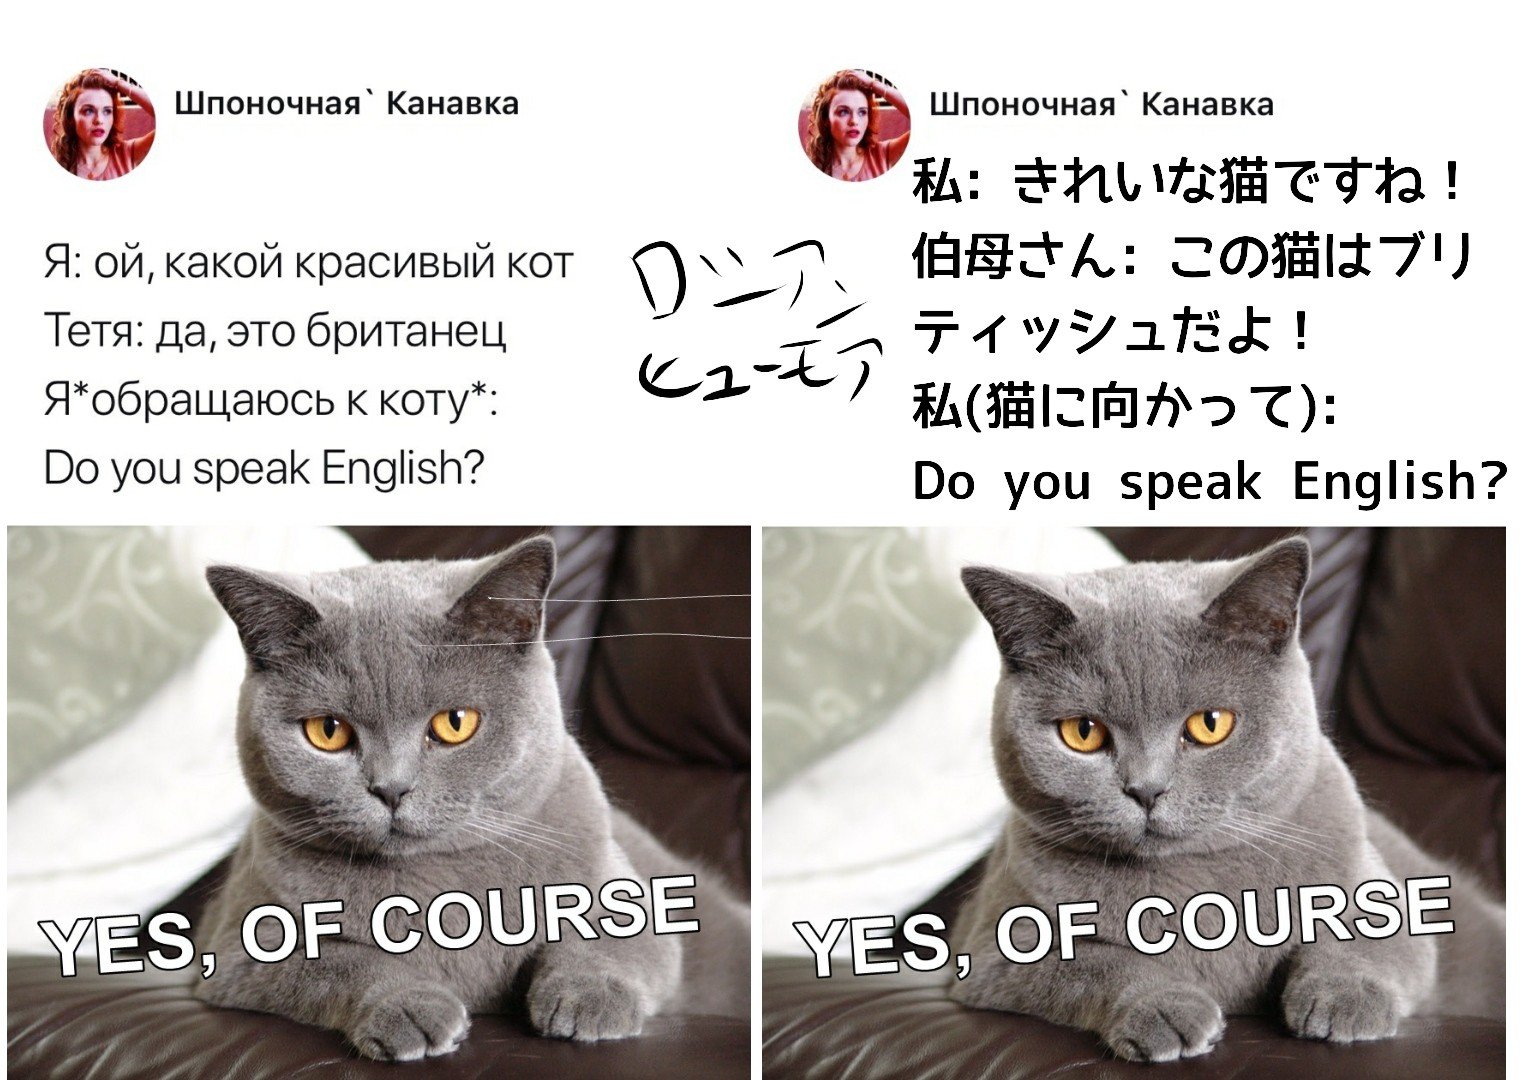 ロシアンヒューモア Humor Awesome Twitter